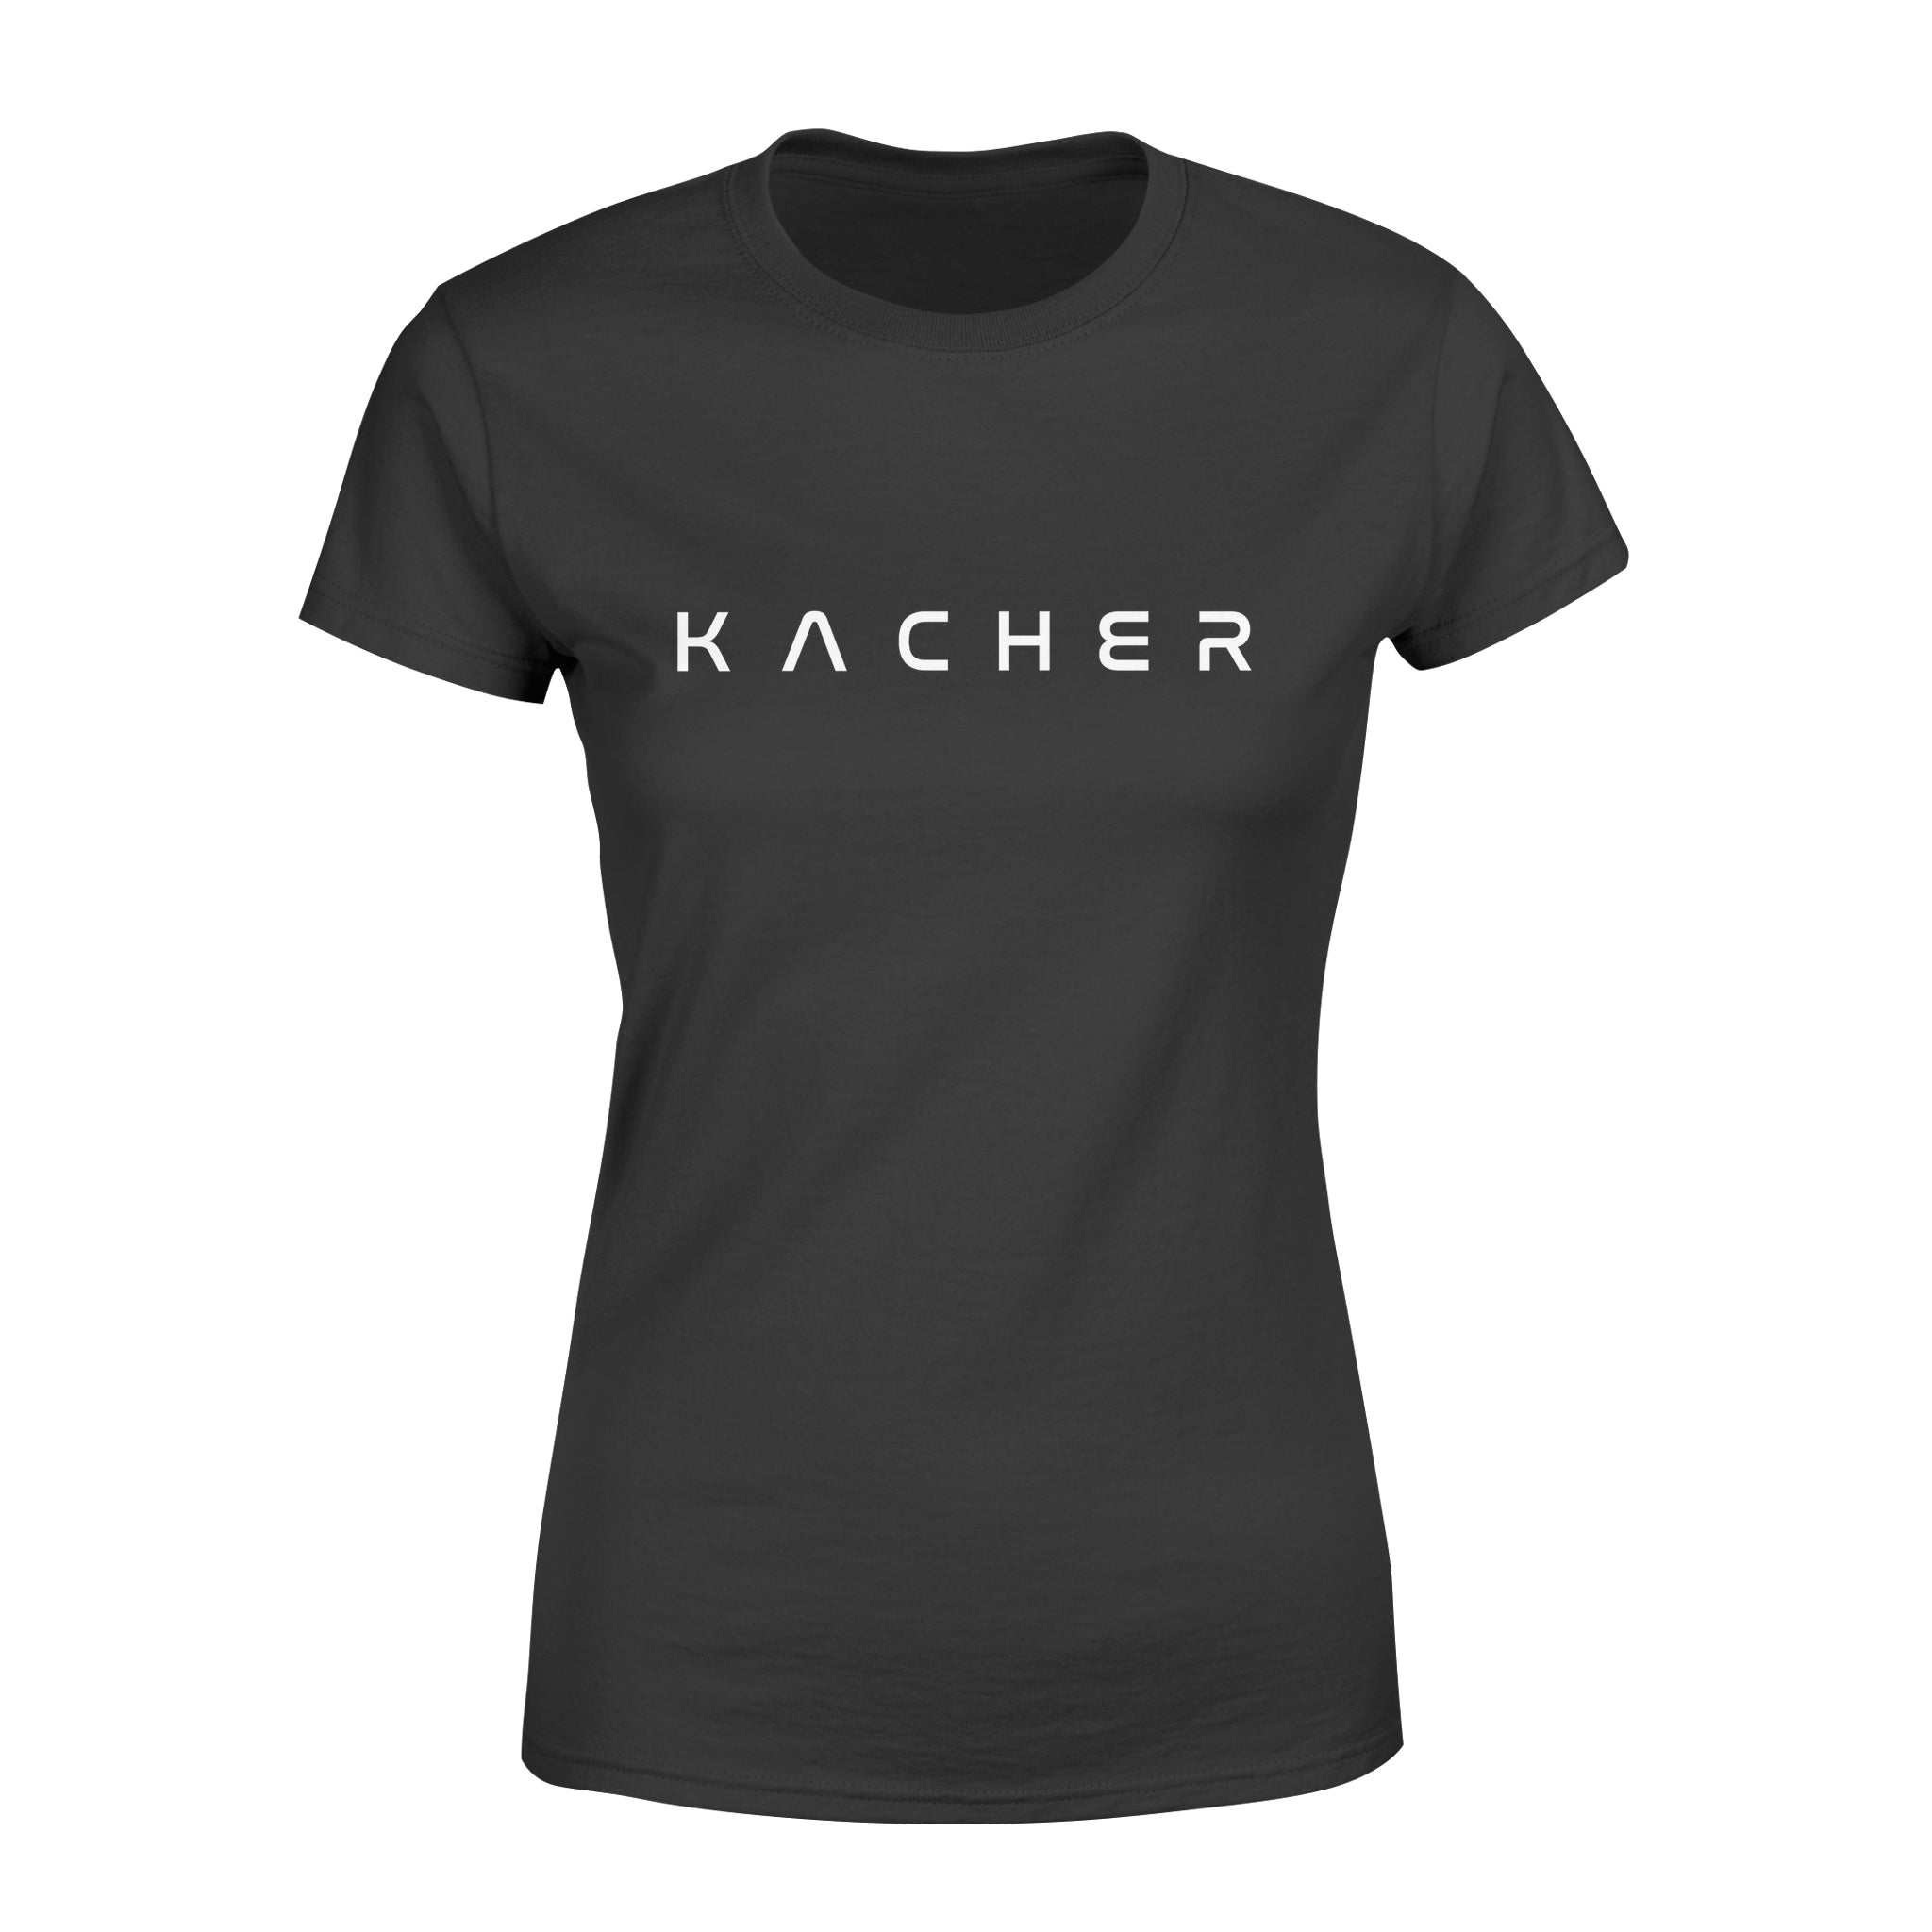 KACHER - Women's T-shirt